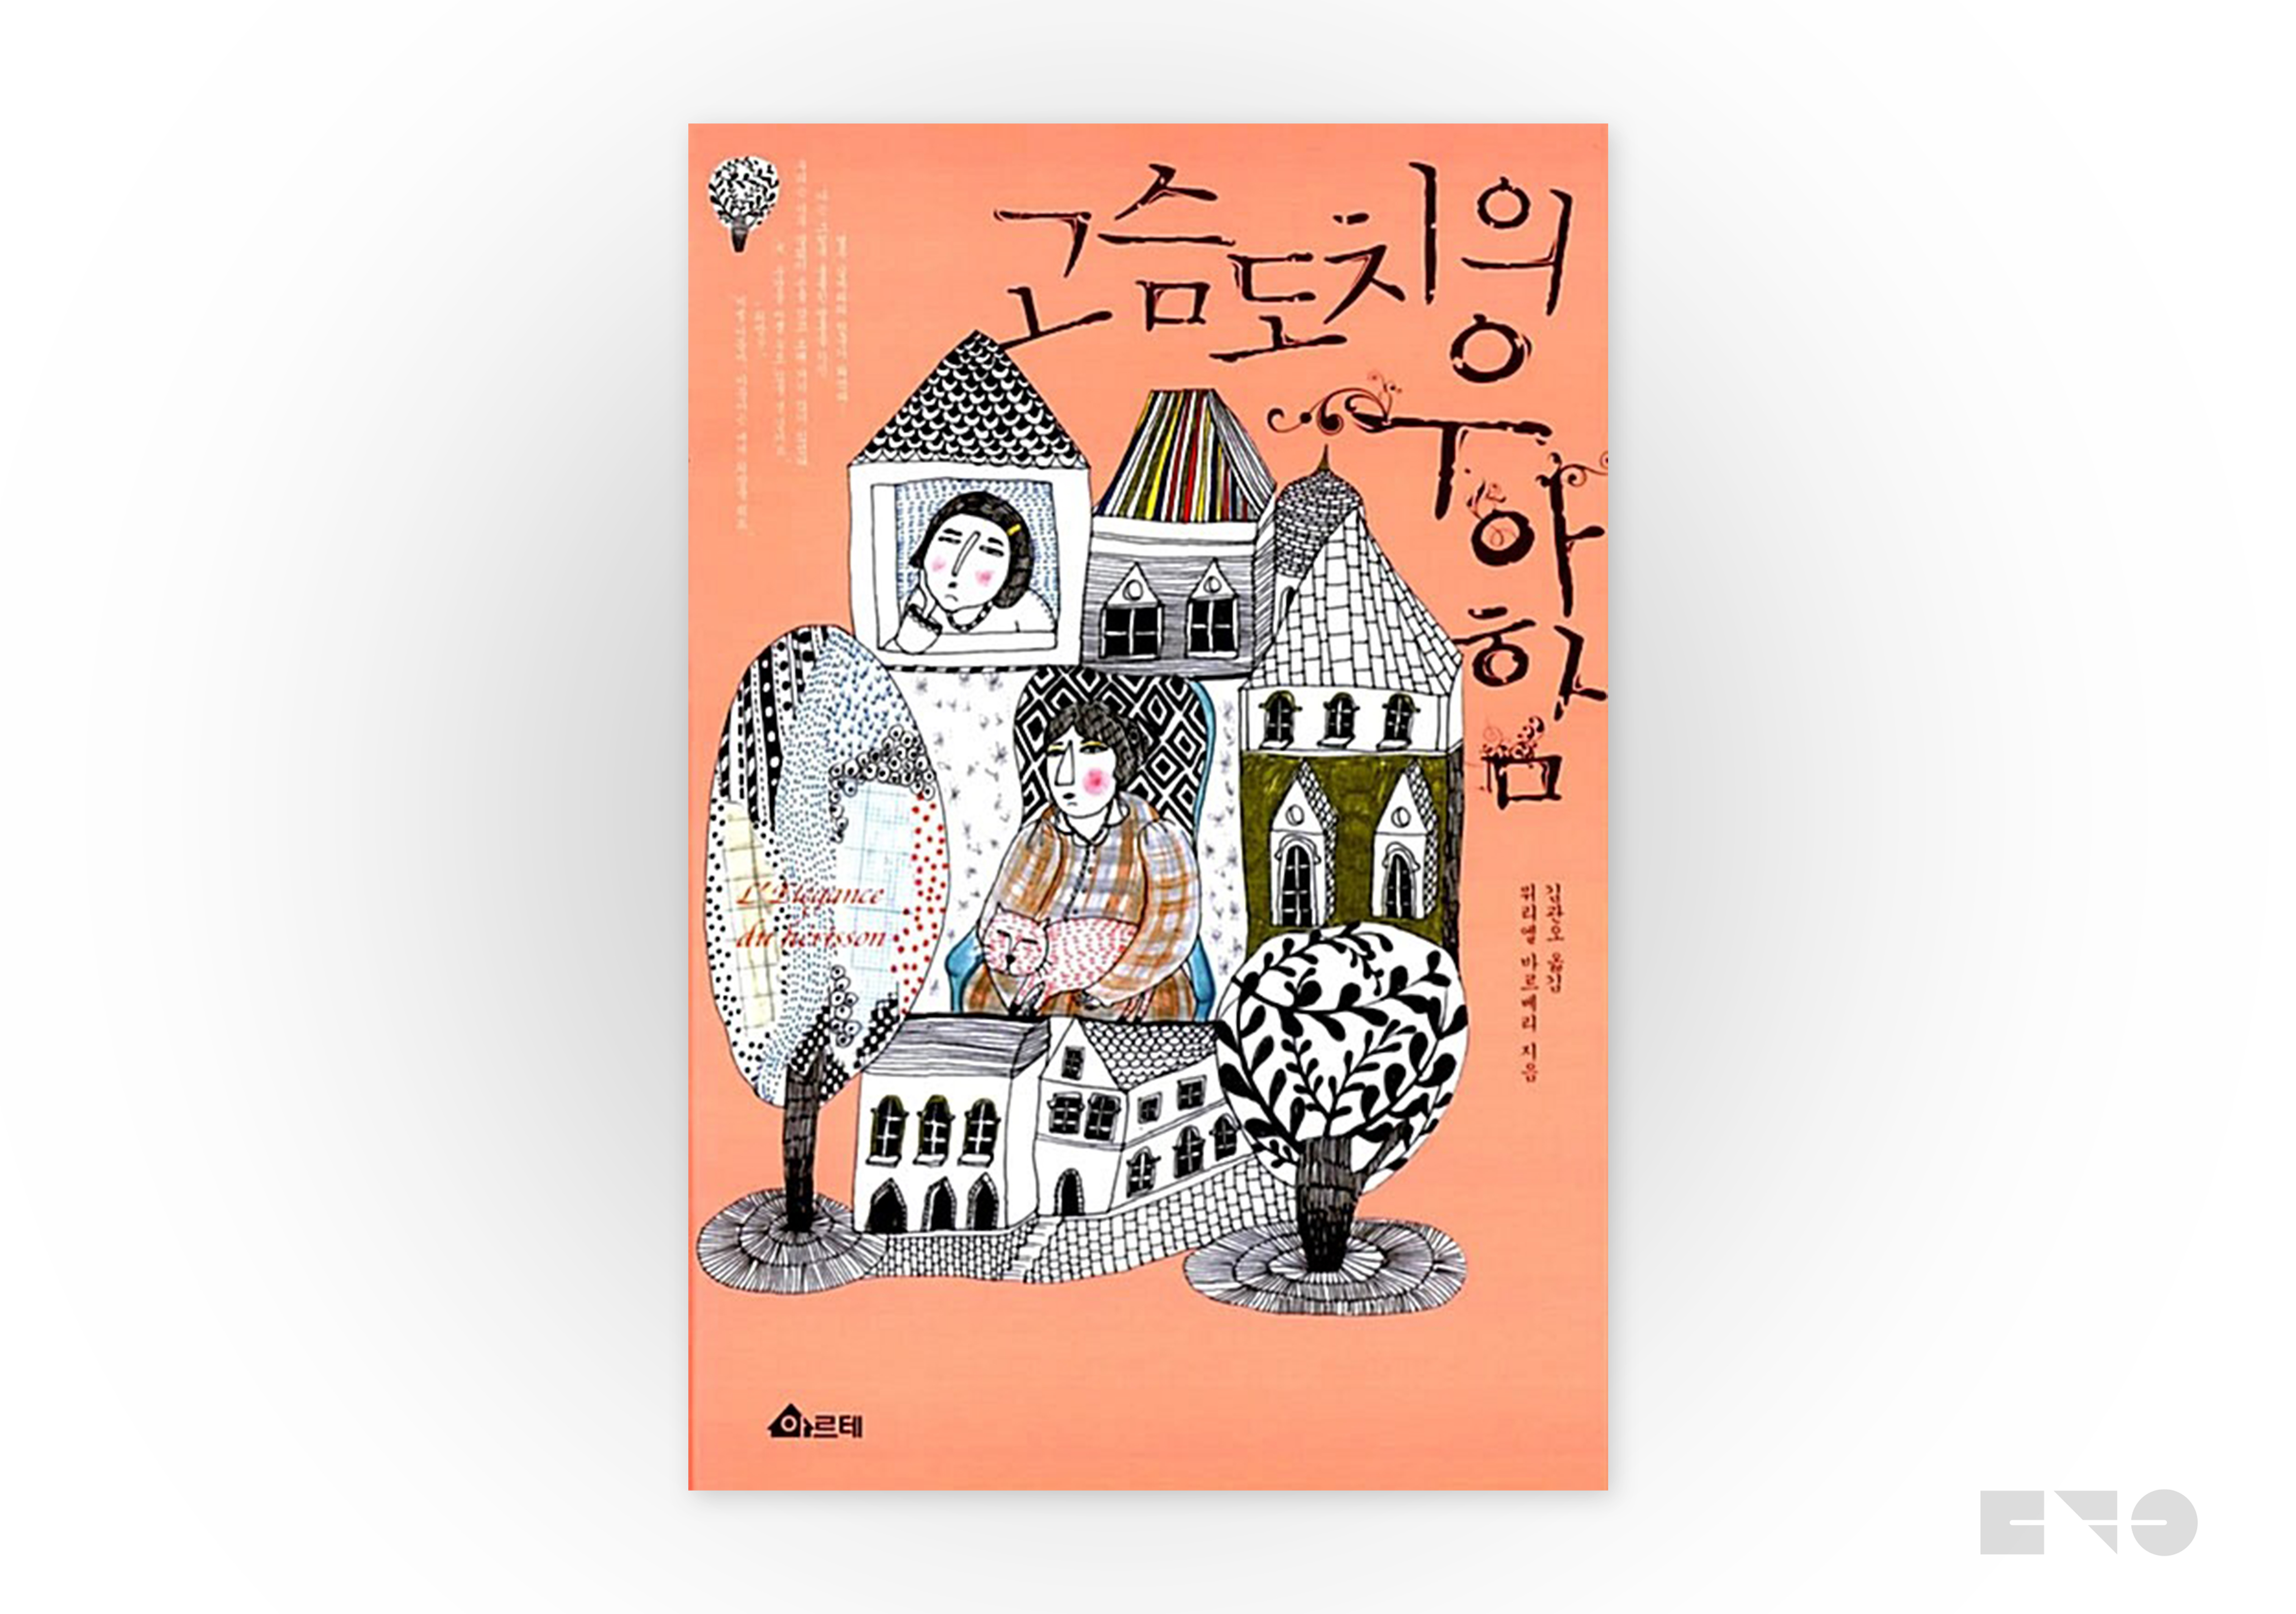 뮈리엘 바르베리, 『고슴도치의 우아함』, 김관오 옮김, 문학동네, 2015